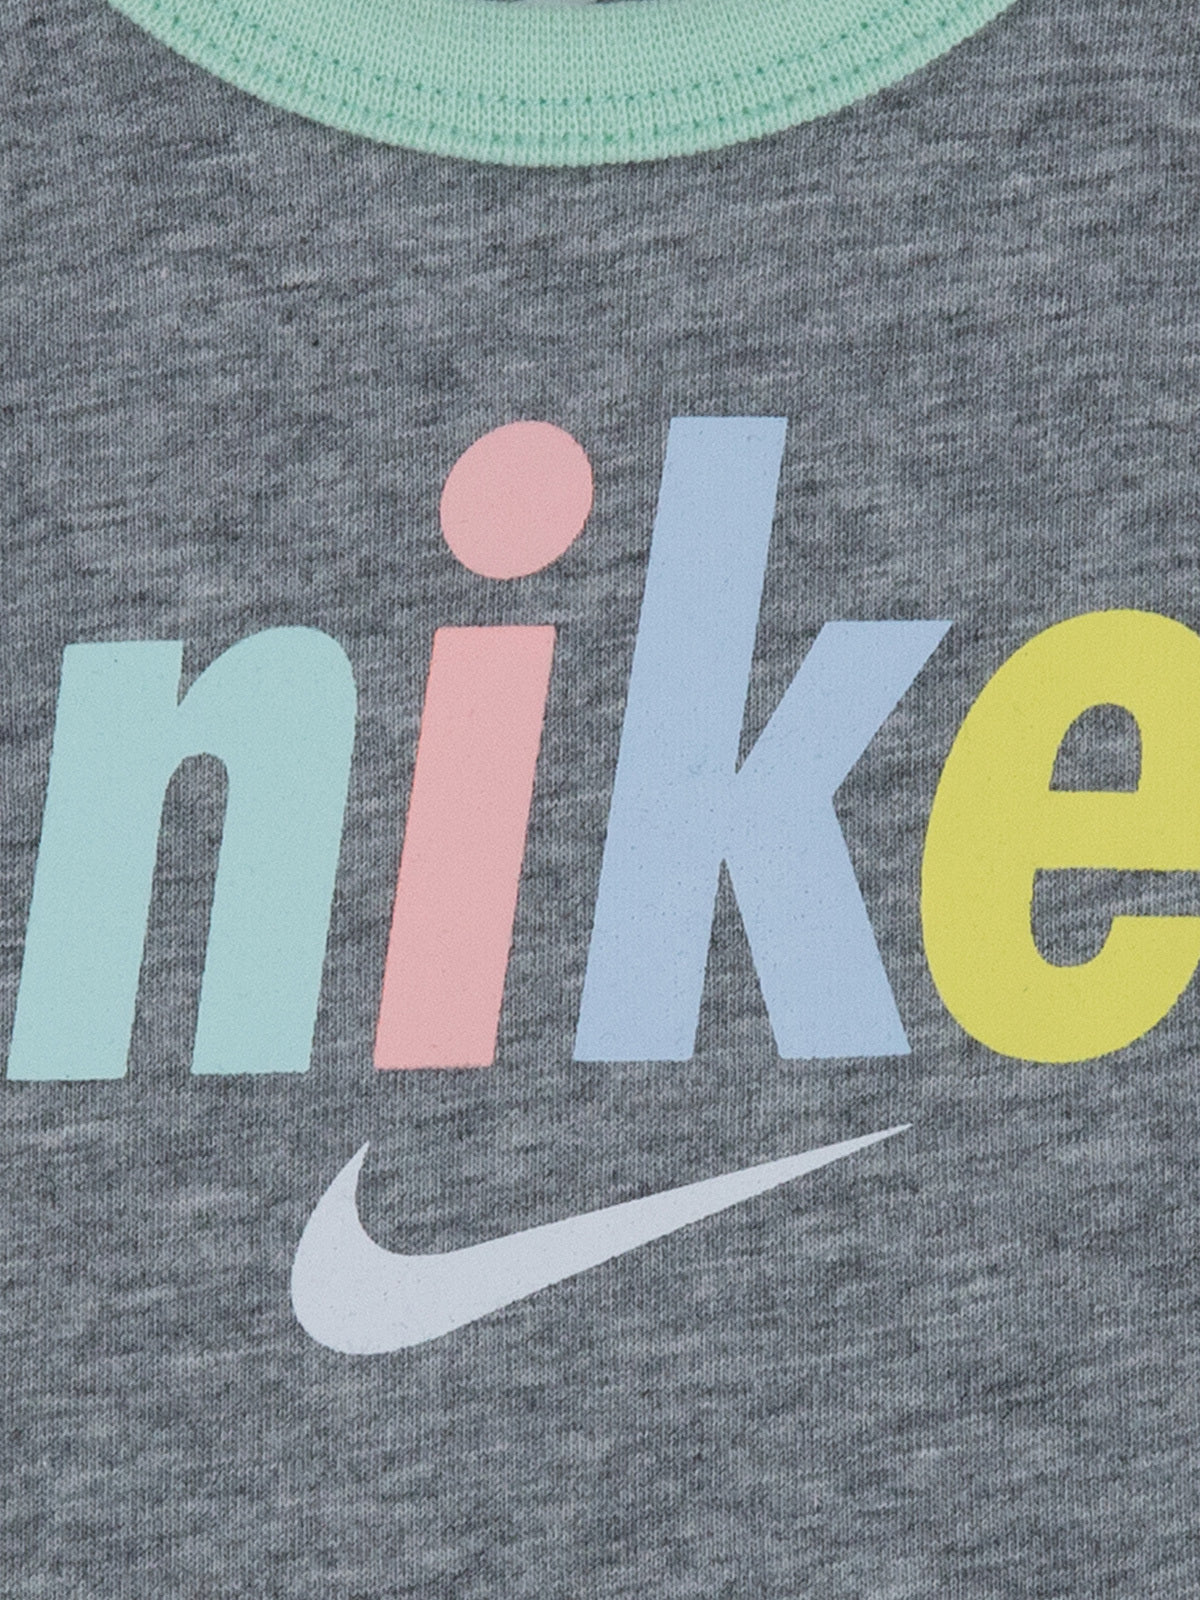 מארז 3 בגדי גוף קצרים עם לוגו מודפס / תינוקות- Nike|נייק